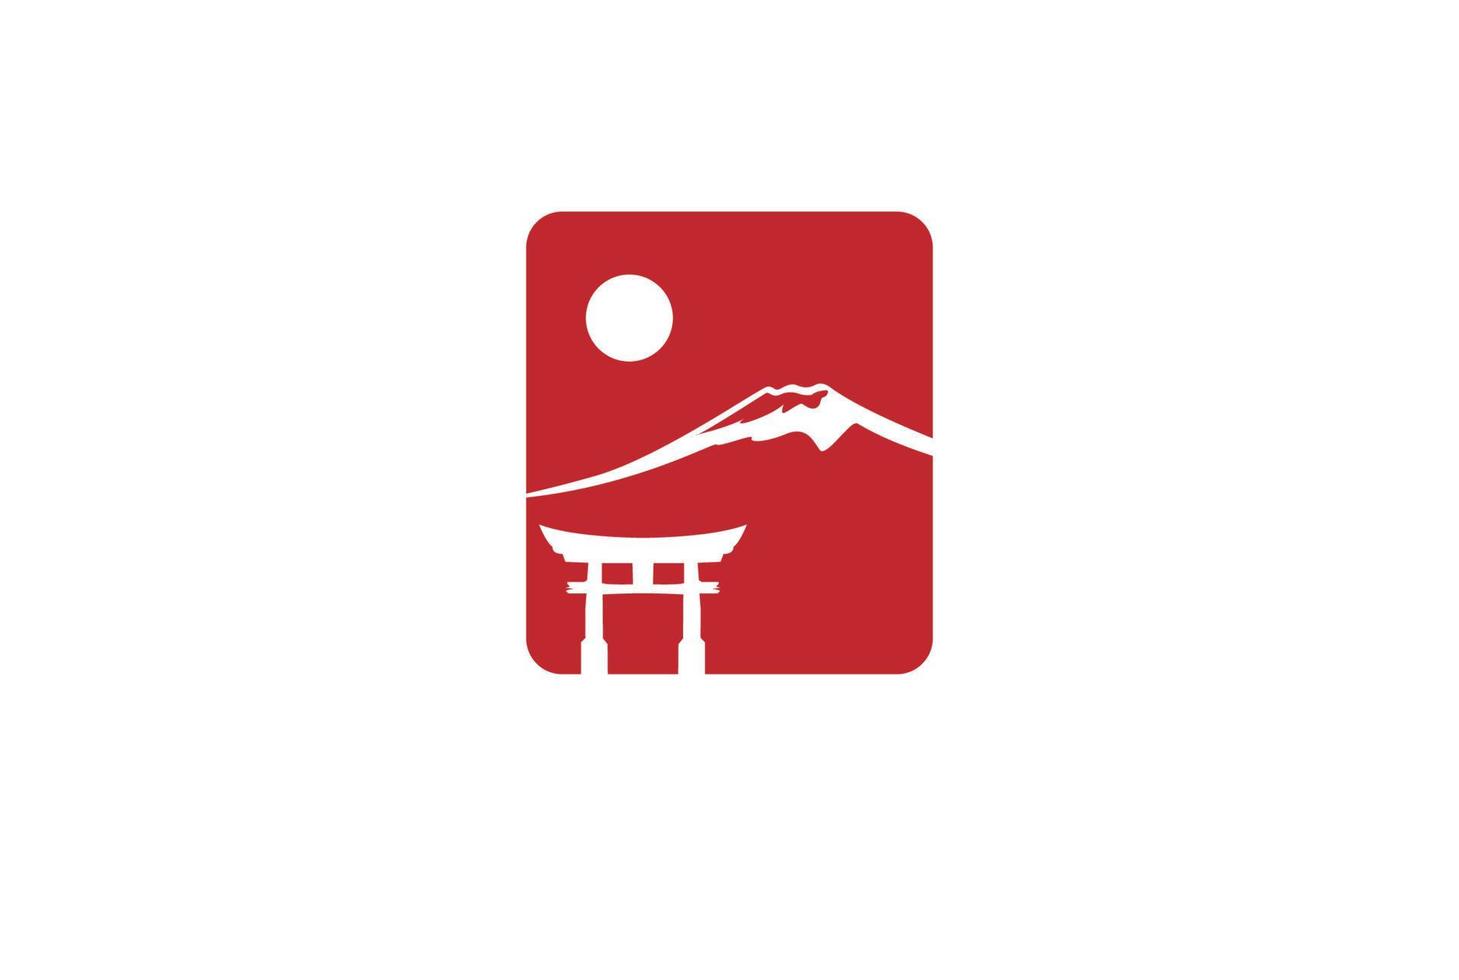 cuadrado simple con puerta sun torii y montura fujiyama para vector de diseño de logotipo de turismo de viajes